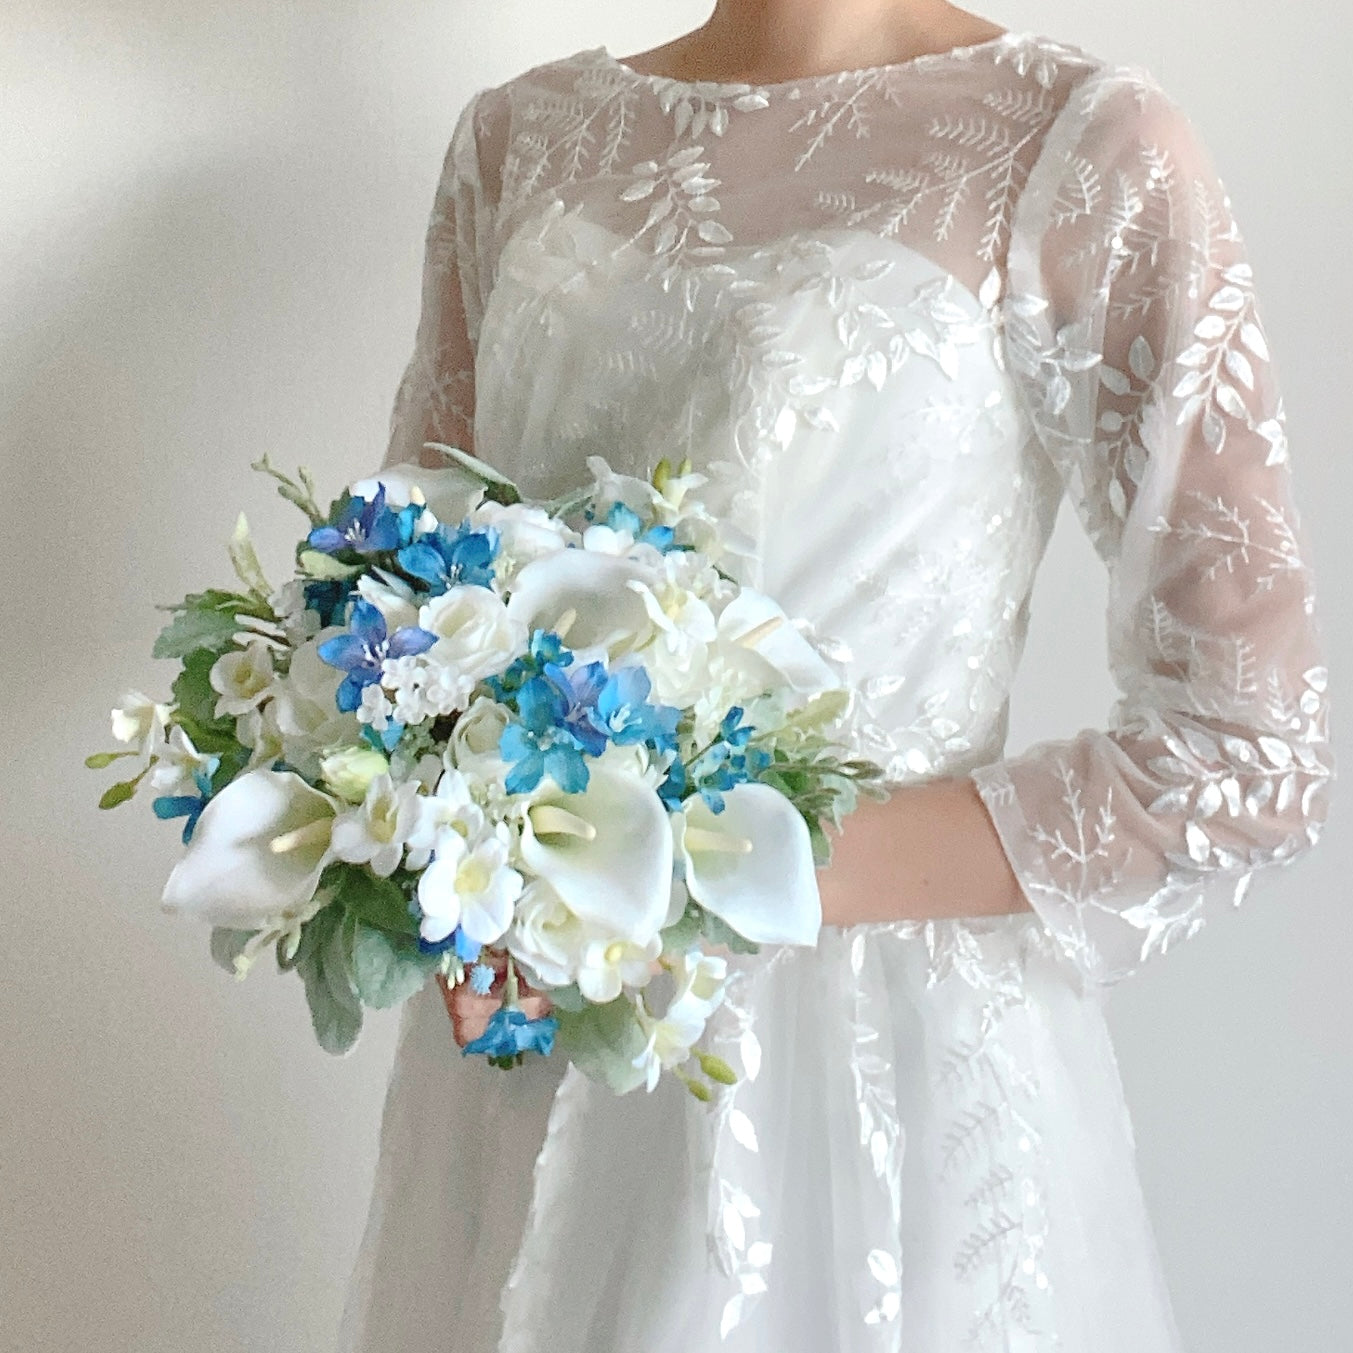 White×blue bouquet